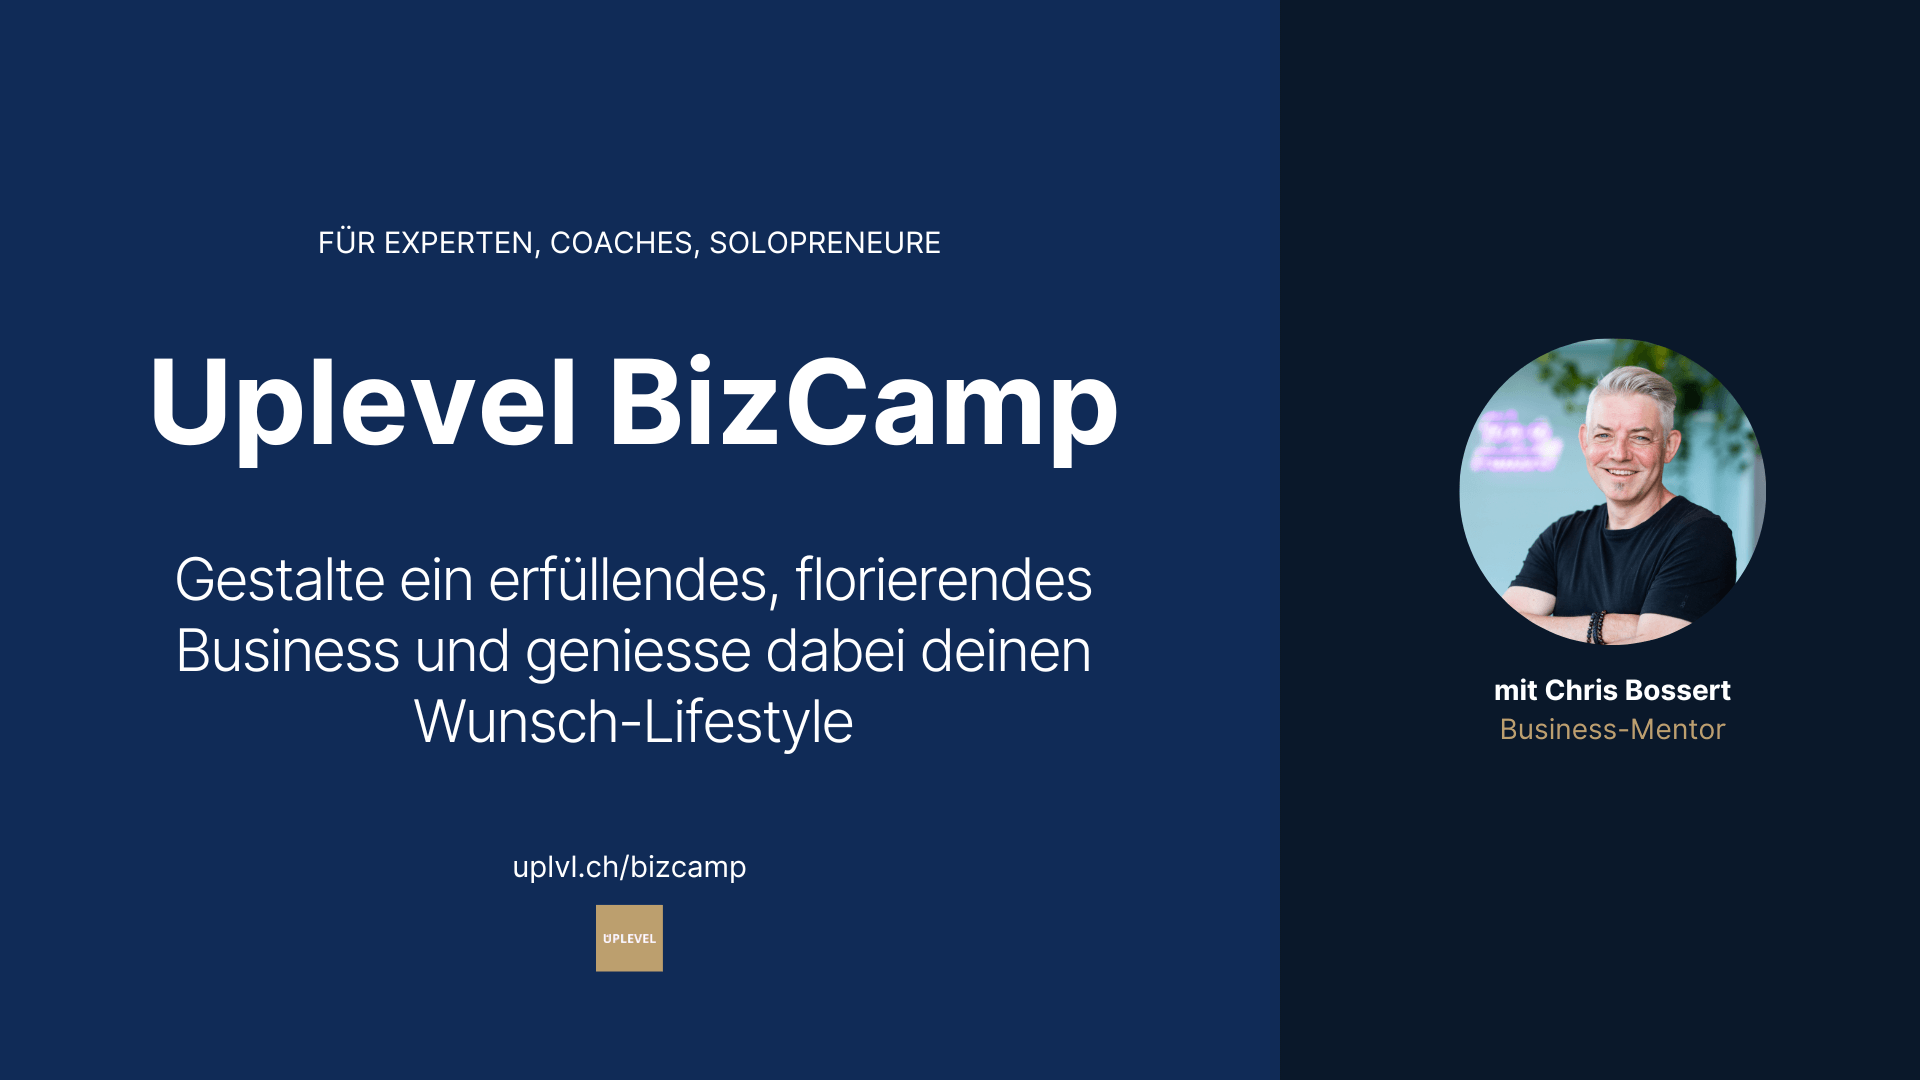 Uplevel BizCamp: Gestalte ein erfüllendes, florierendes Business und geniesse dabei deinen Wunsch-Lifestyle.